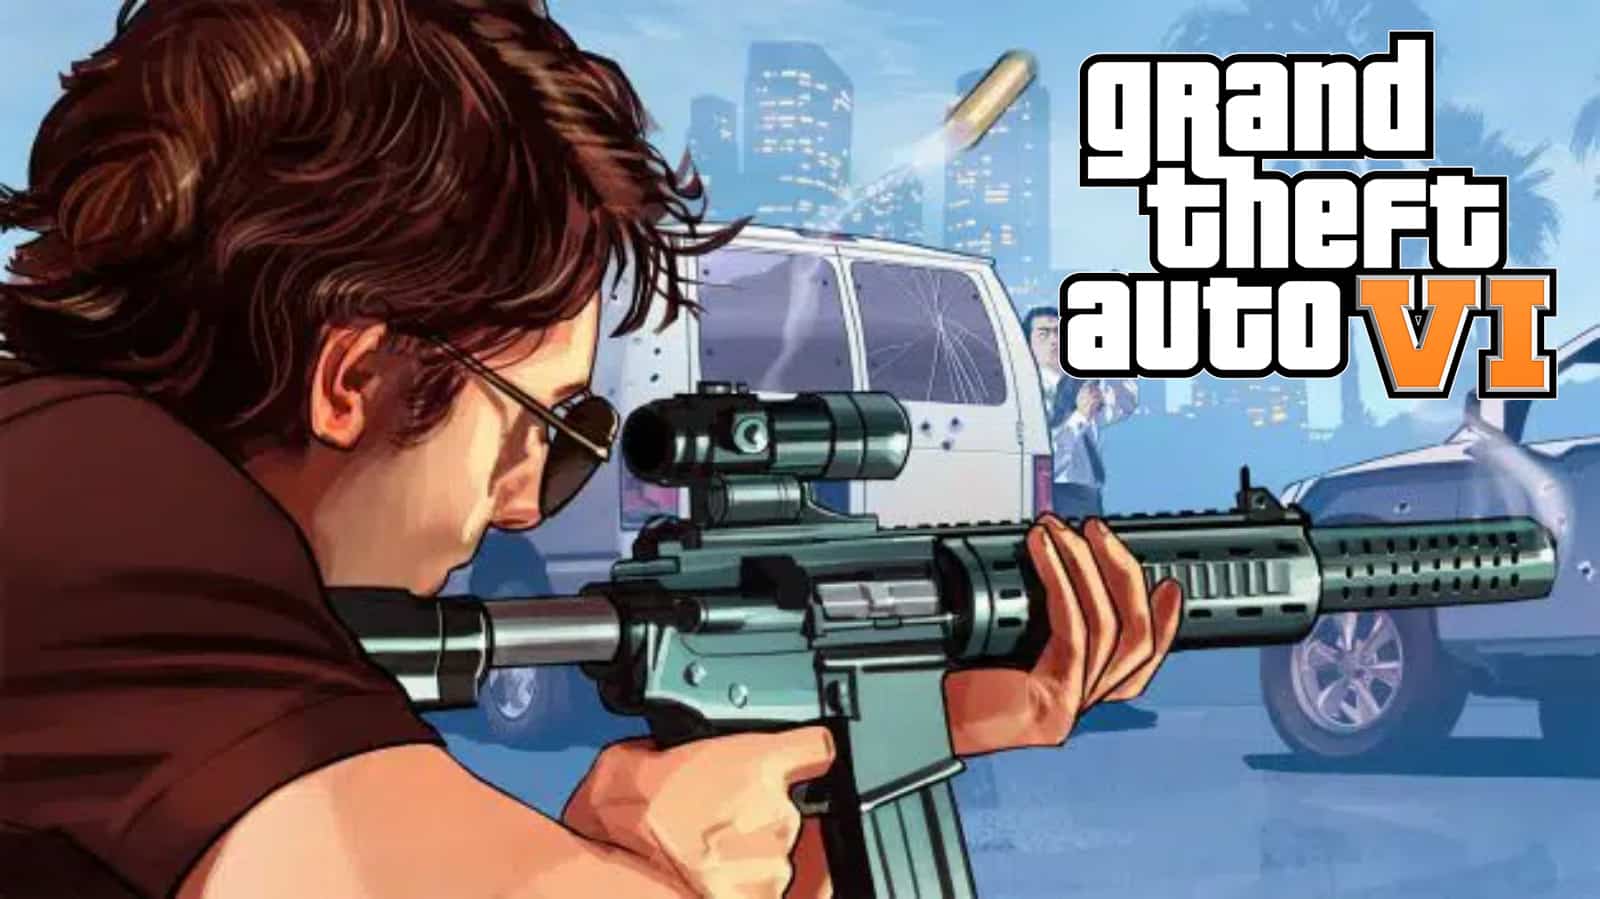 Znawca Rockstar ujawnia daty podobno zapowiedzi GTA 6 w GTA Online